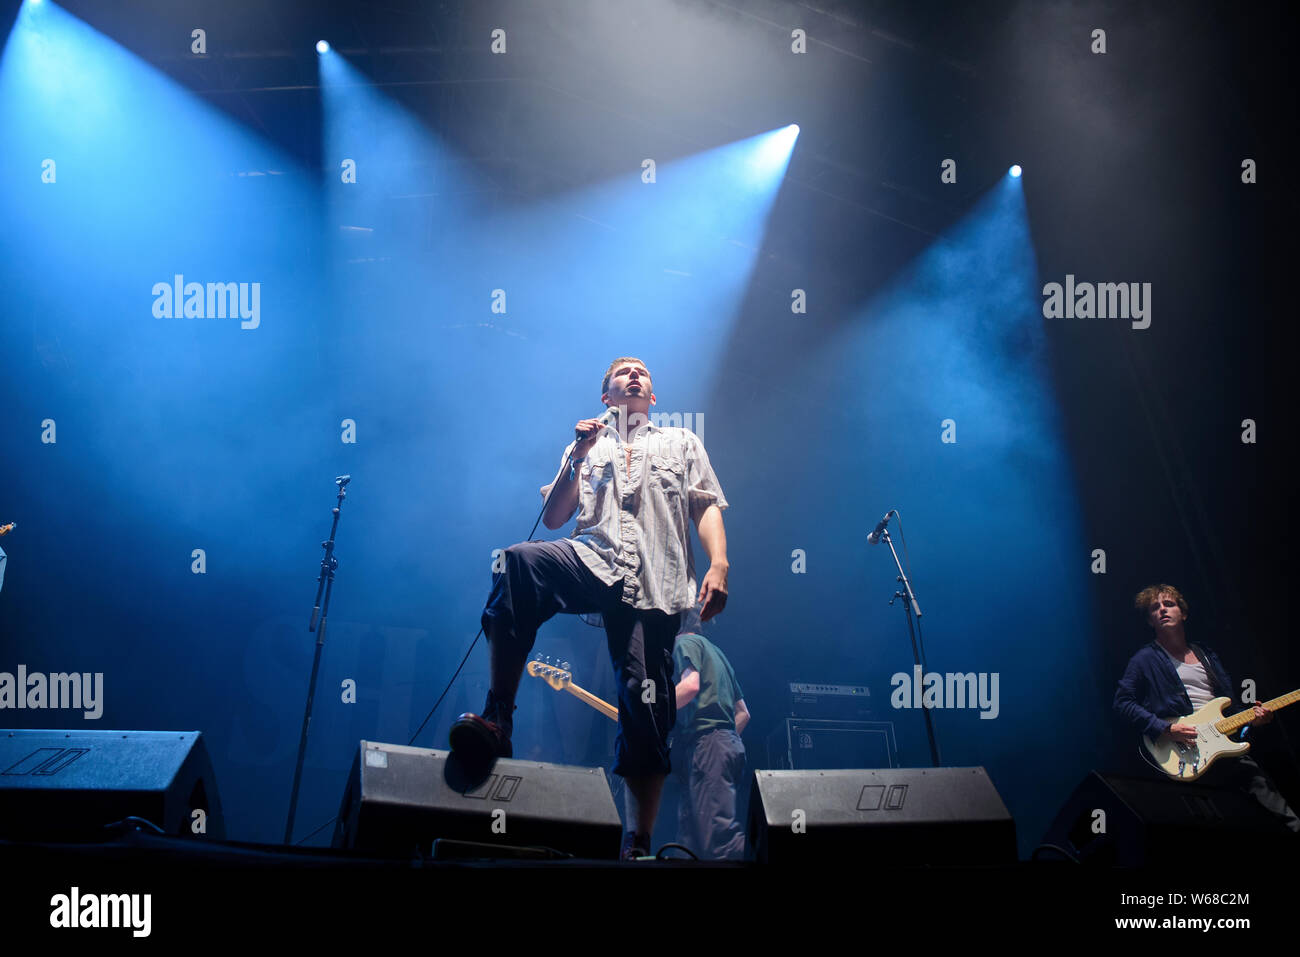 BILBAO, ESPAGNE - JUL 13: La honte (groupe punk rock) se déroule en concert au BBK Live 2019 Music Festival le 13 juillet 2019 à Bilbao, Espagne. Banque D'Images